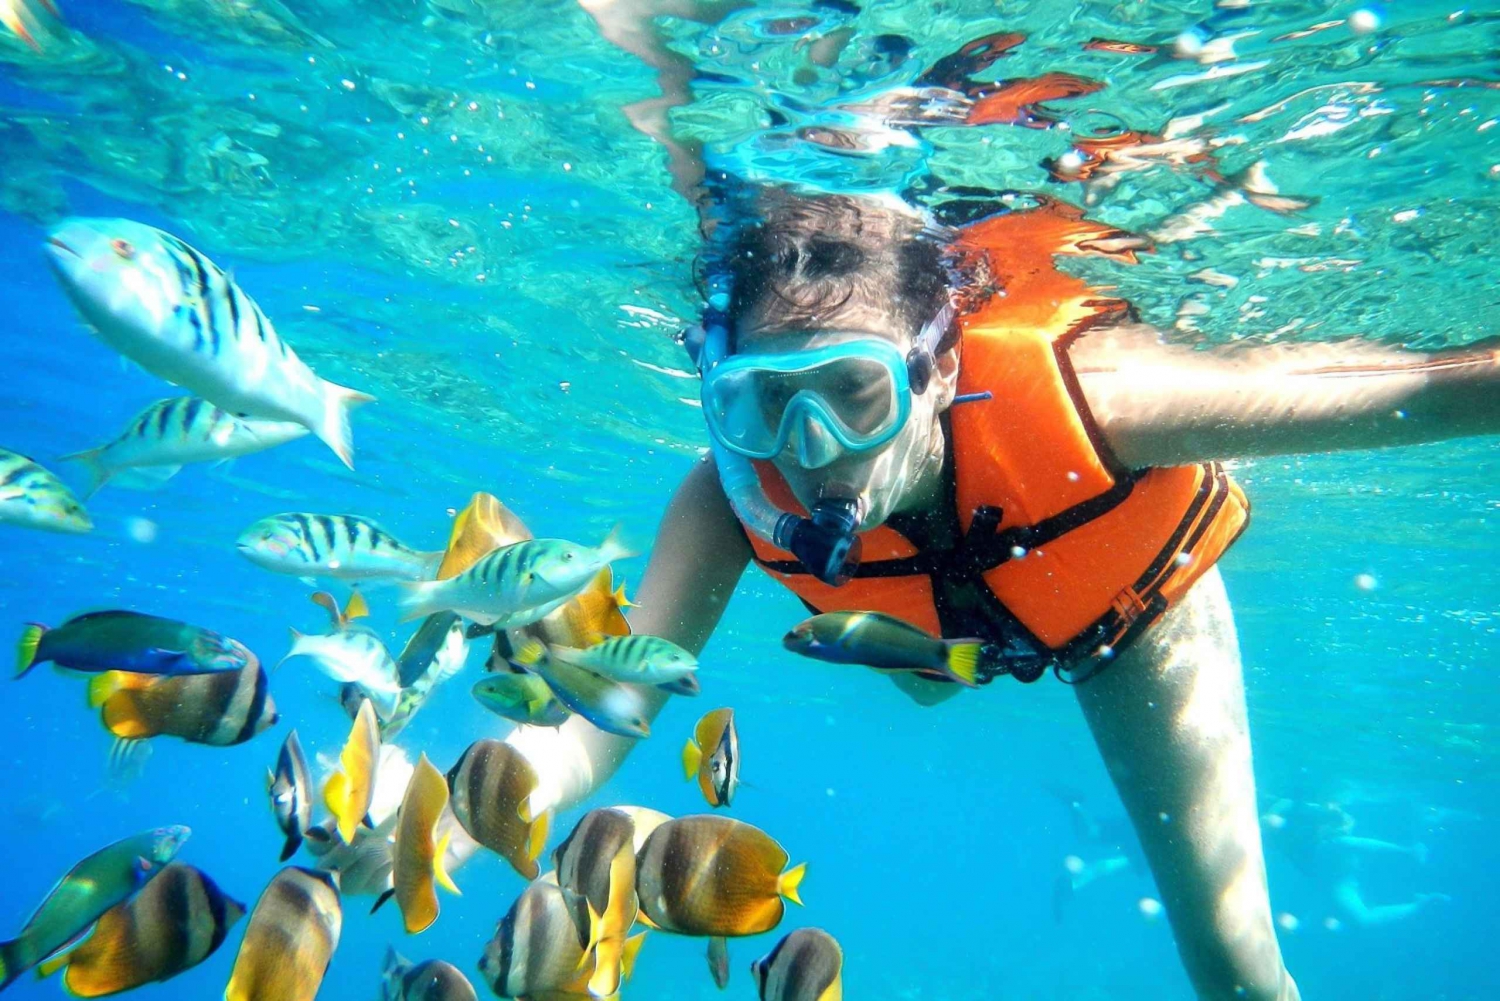 Puerto Morelos: Snorkel Trip with Lunch